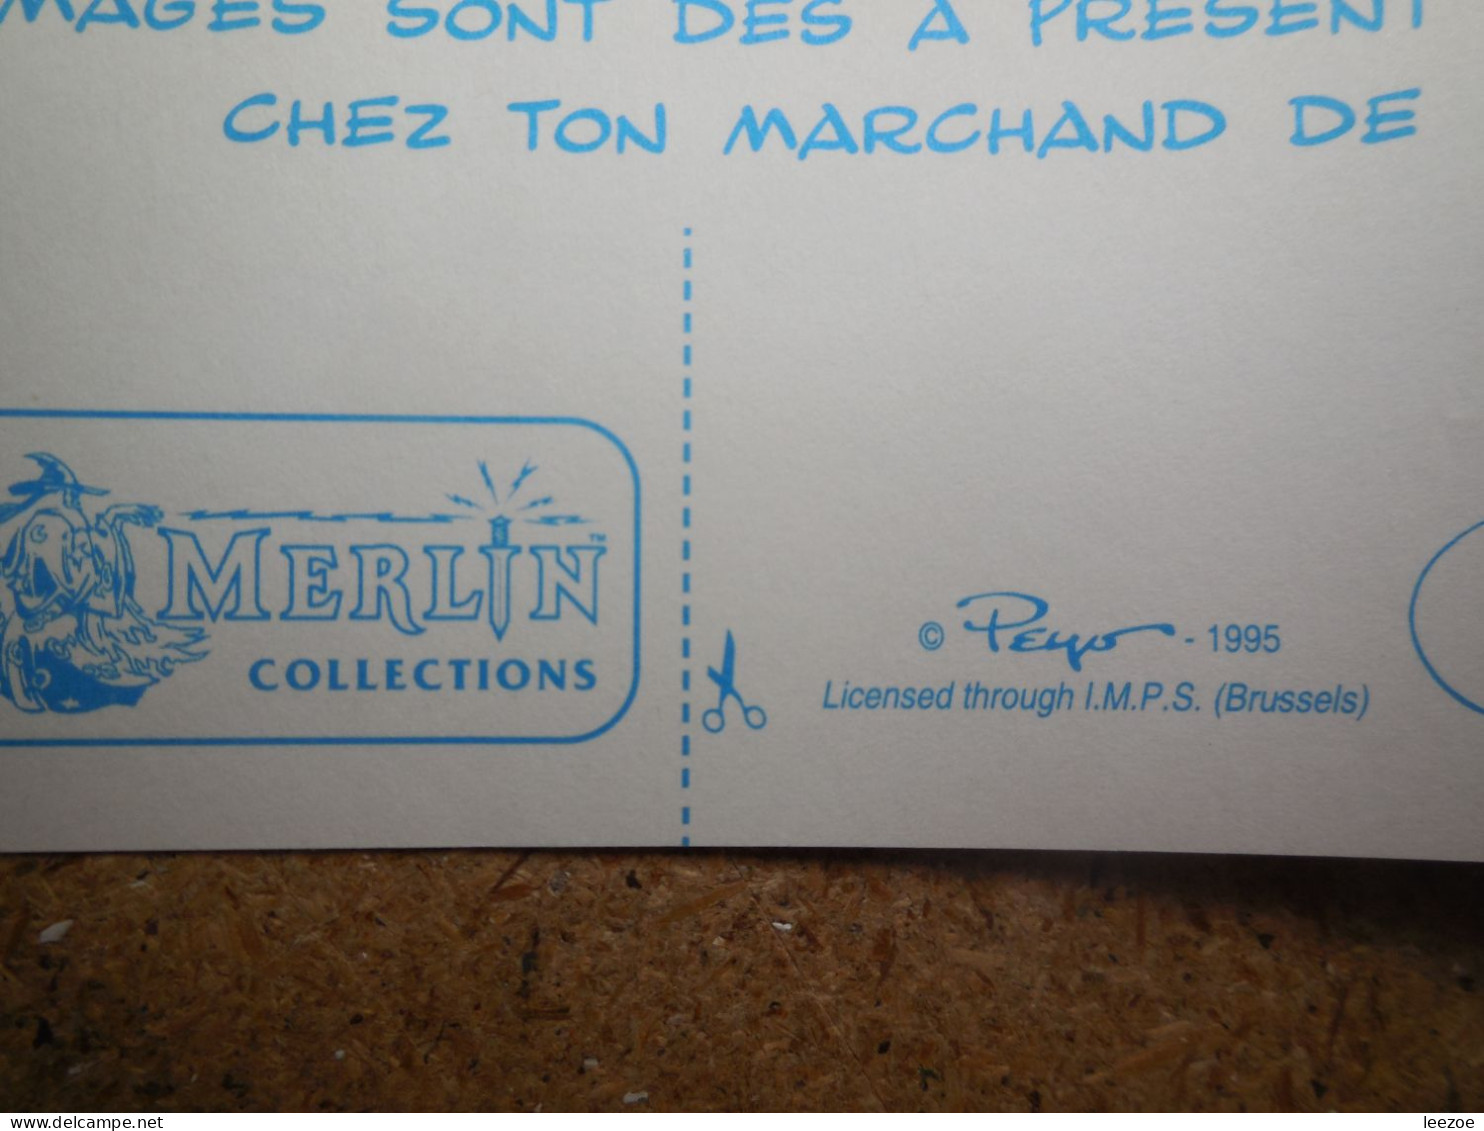 Objets Dérivés BD Les Schtroumpfs, DE SMURFEN, Autocollants, Stickers Peyo 1995 Par Merlin Collection, I.M.P.S BRUSSELS. - Aufkleber